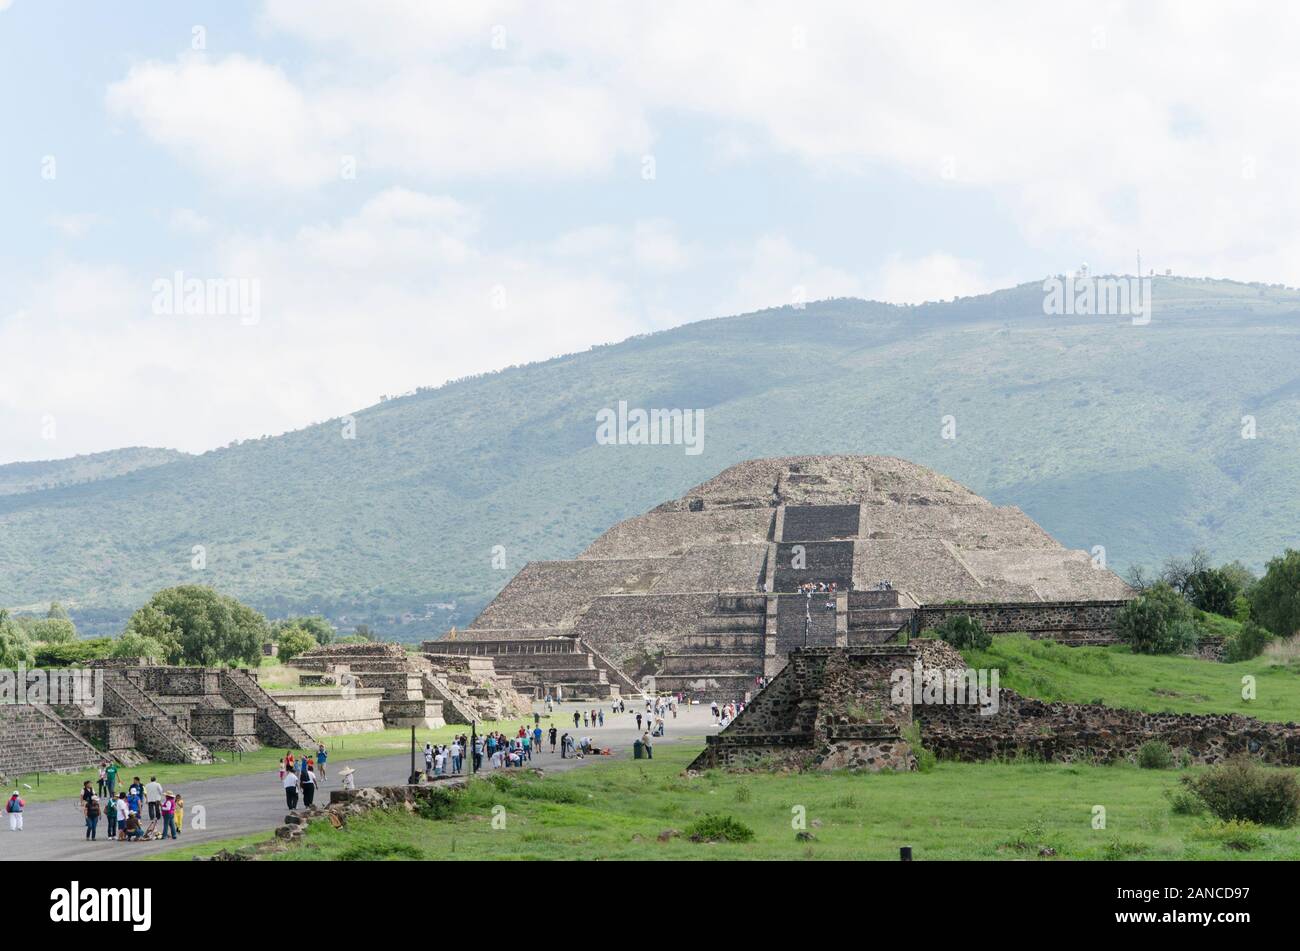 Pyramid of the Moon, piramide de la luna, and Avenue of the dead, Calzada de los muertos, in Teotihuacan, an ancient Mesoamerican city located in a su Stock Photo